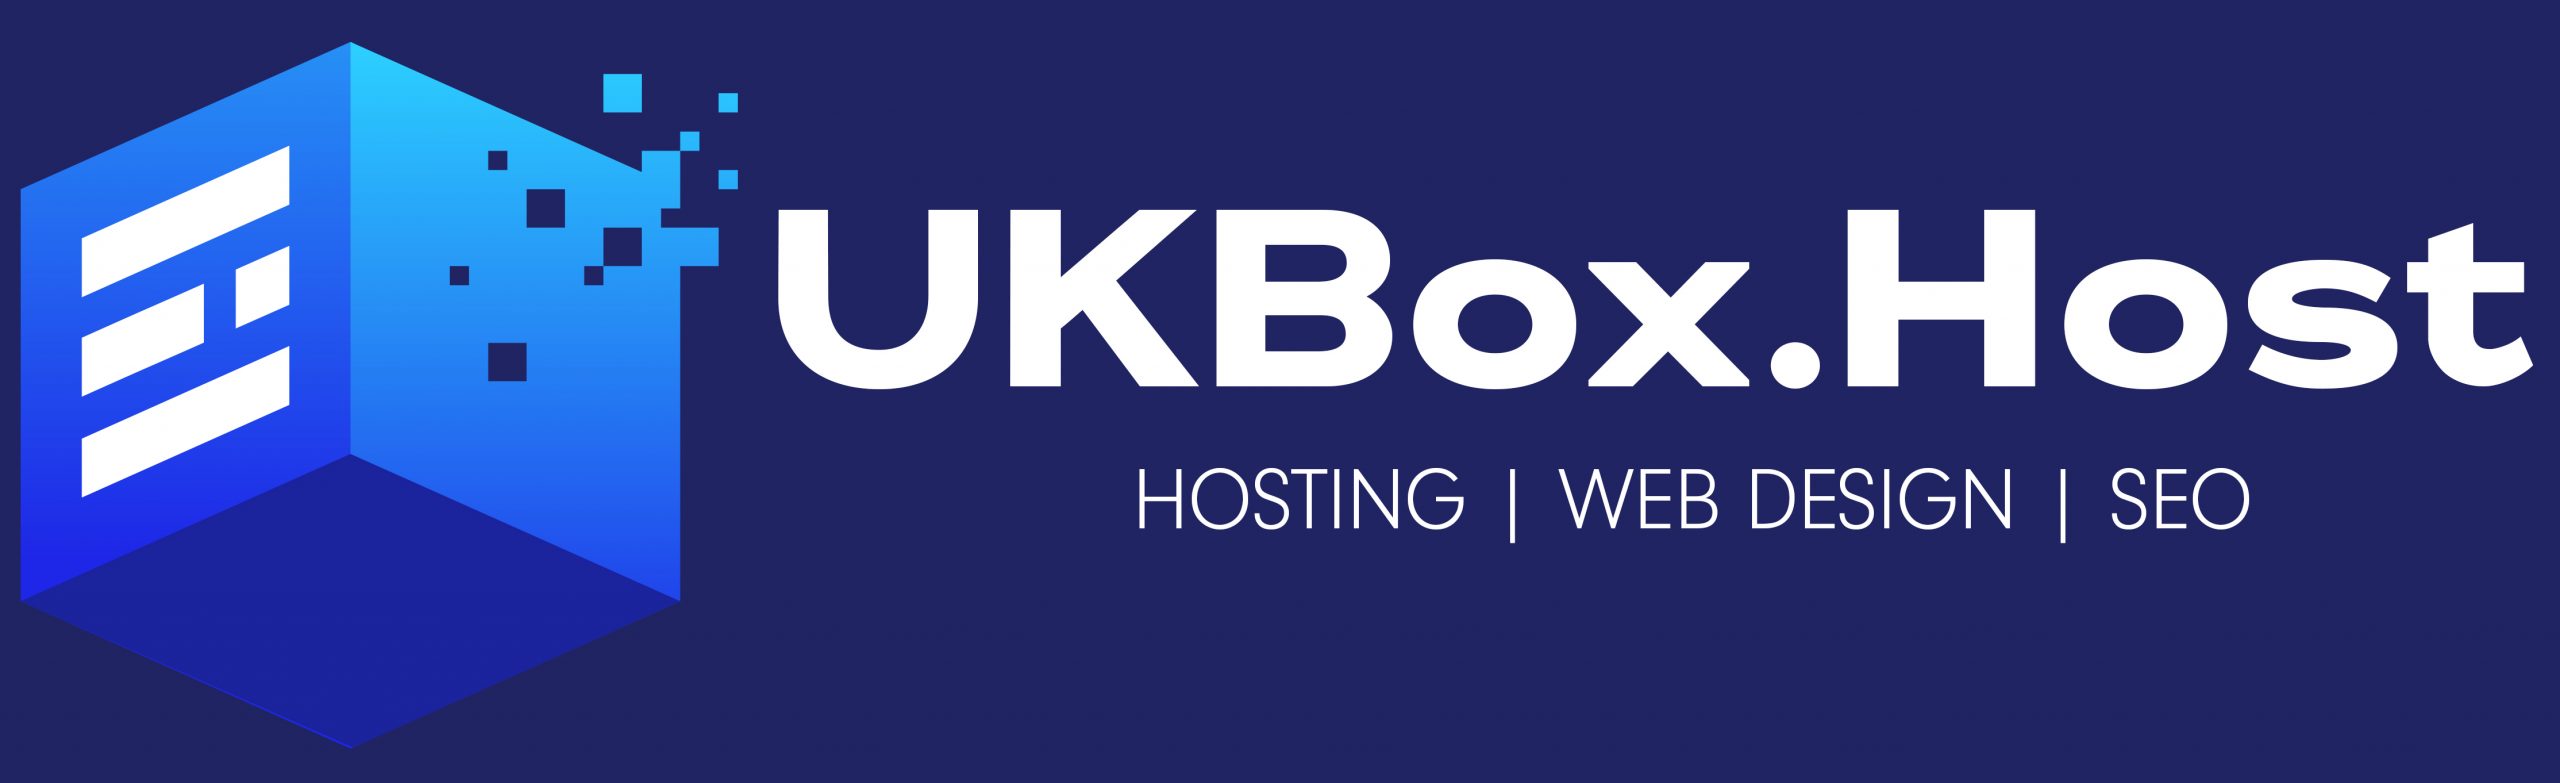 UK Box